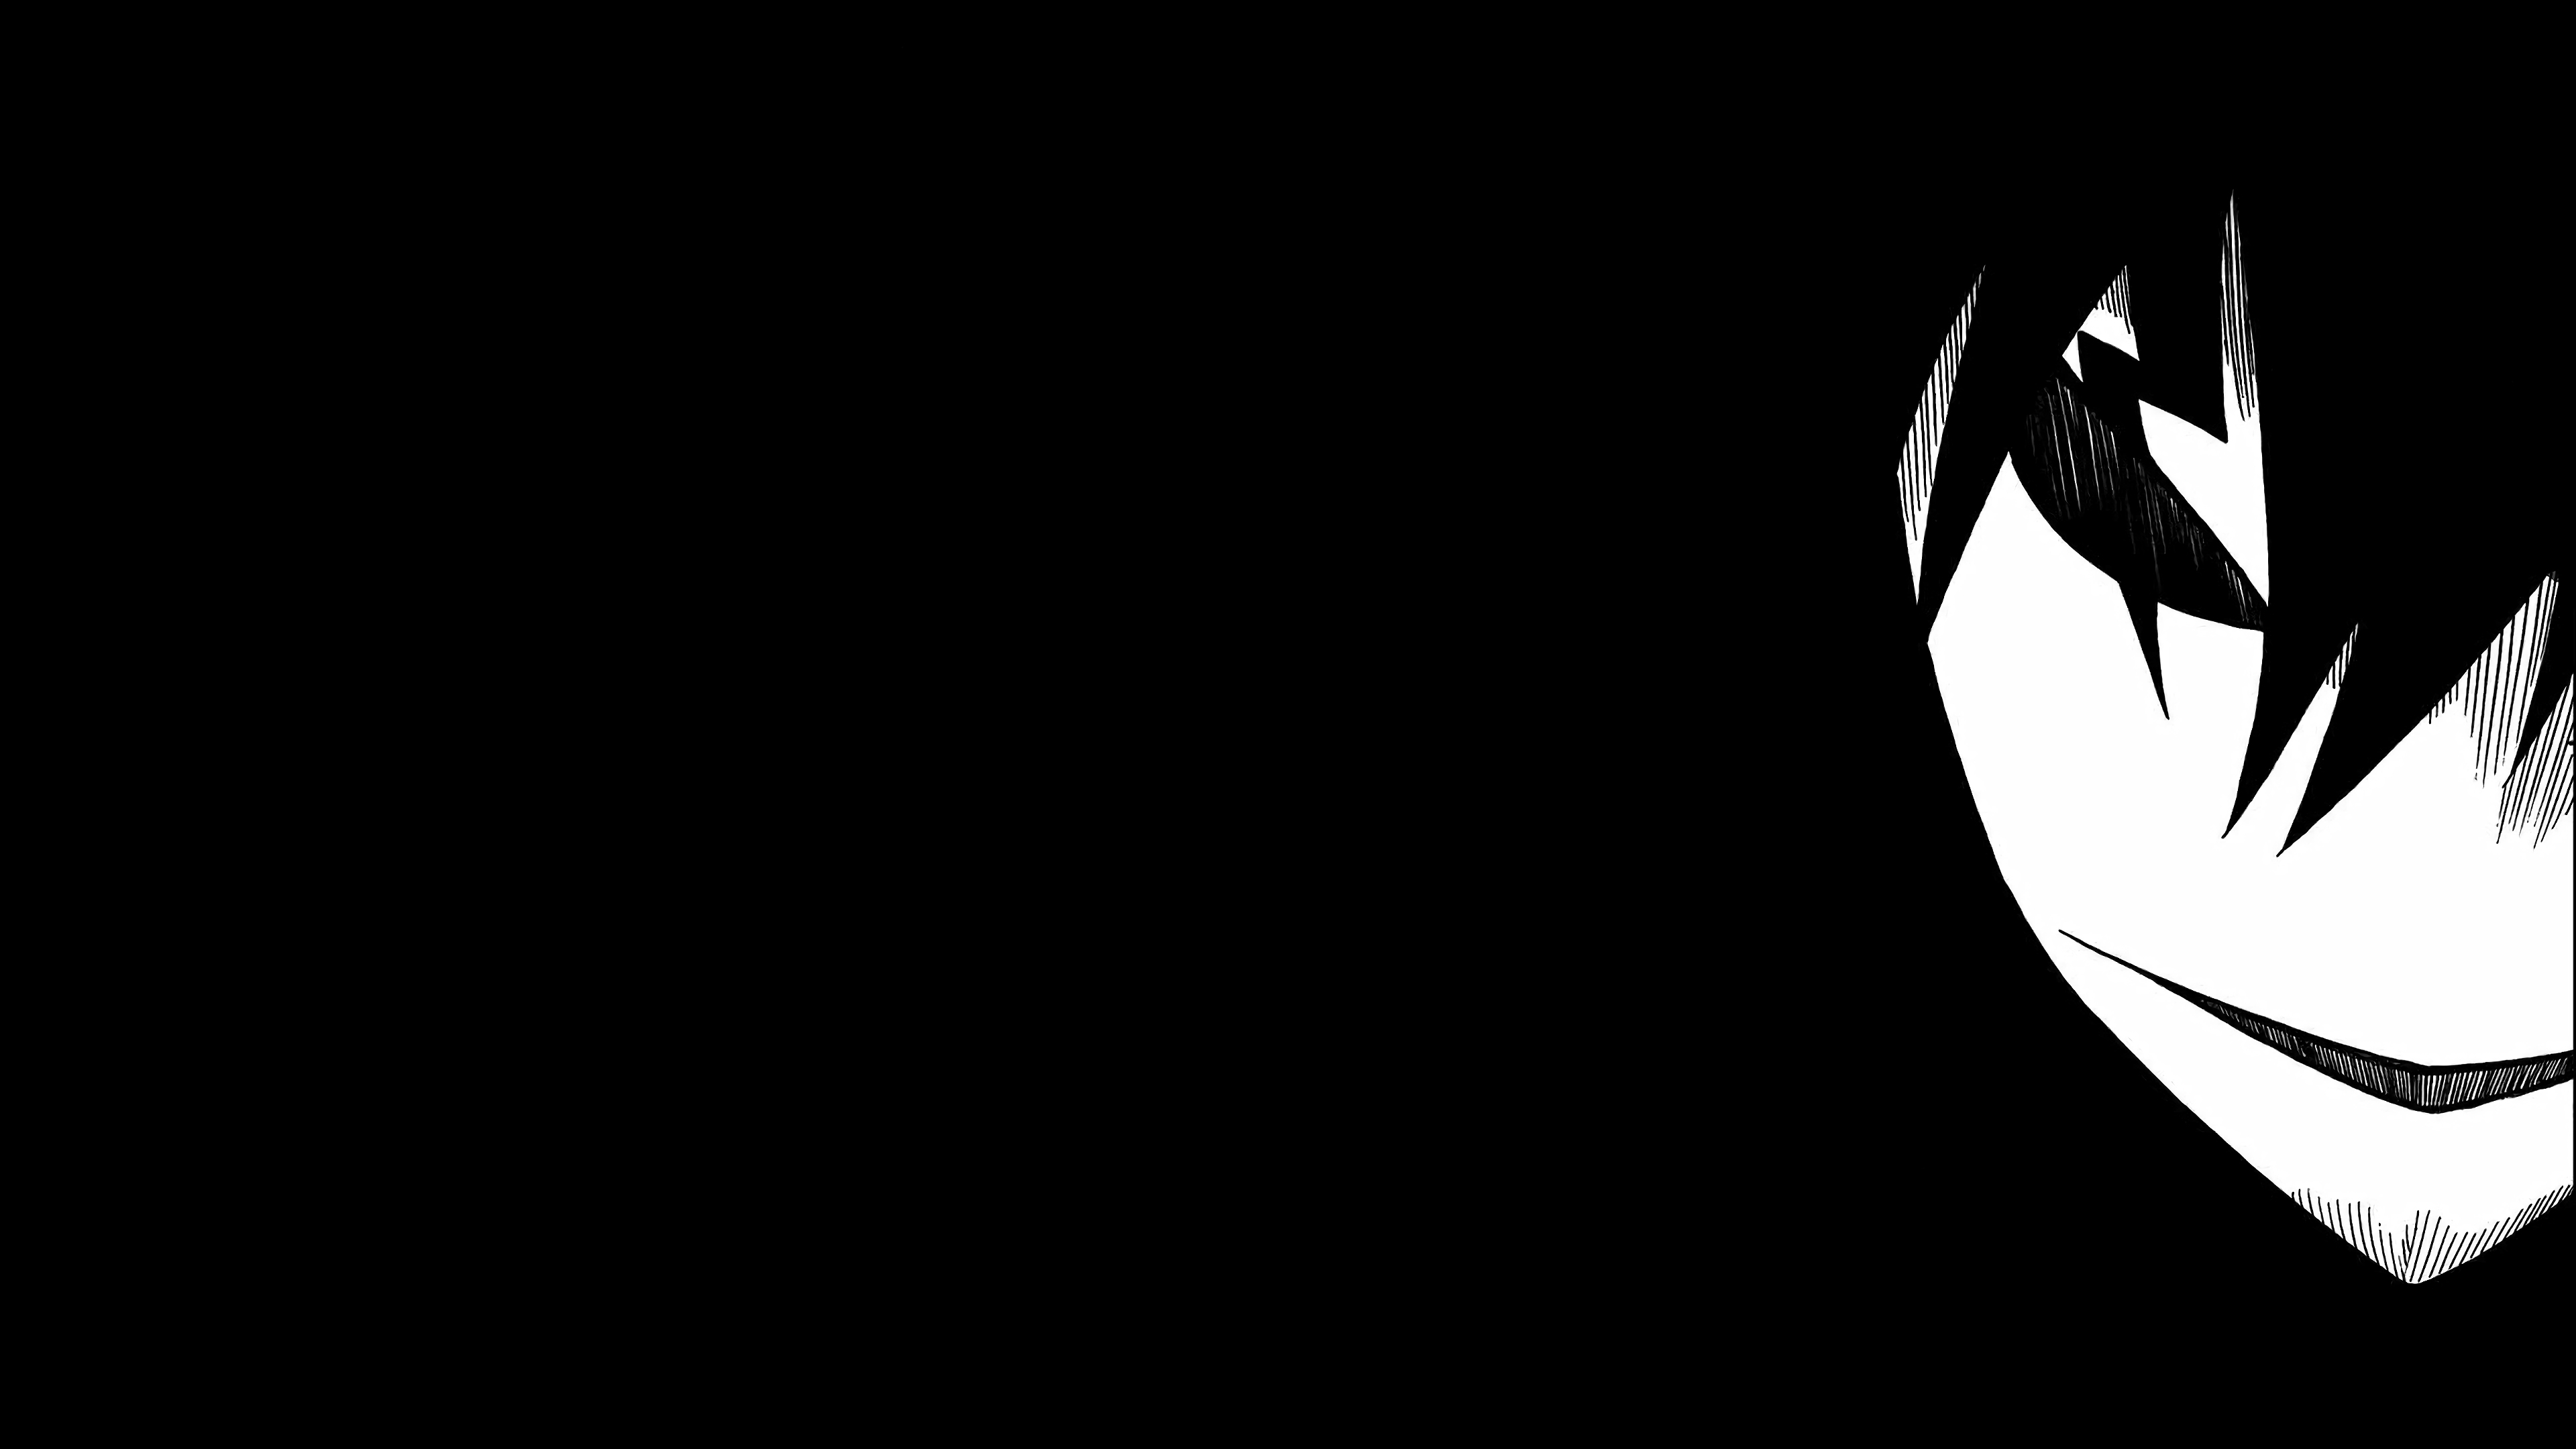 Hình nền anime đen luôn mang một vẻ đẹp khác biệt, huyền bí và đầy tính nghệ thuật. Nếu bạn là fan của anime và thích sự đơn giản nhưng tinh tế thì hãy cùng chiêm ngưỡng những hình nền anime đen đẹp mắt trong bộ sưu tập của chúng tôi.